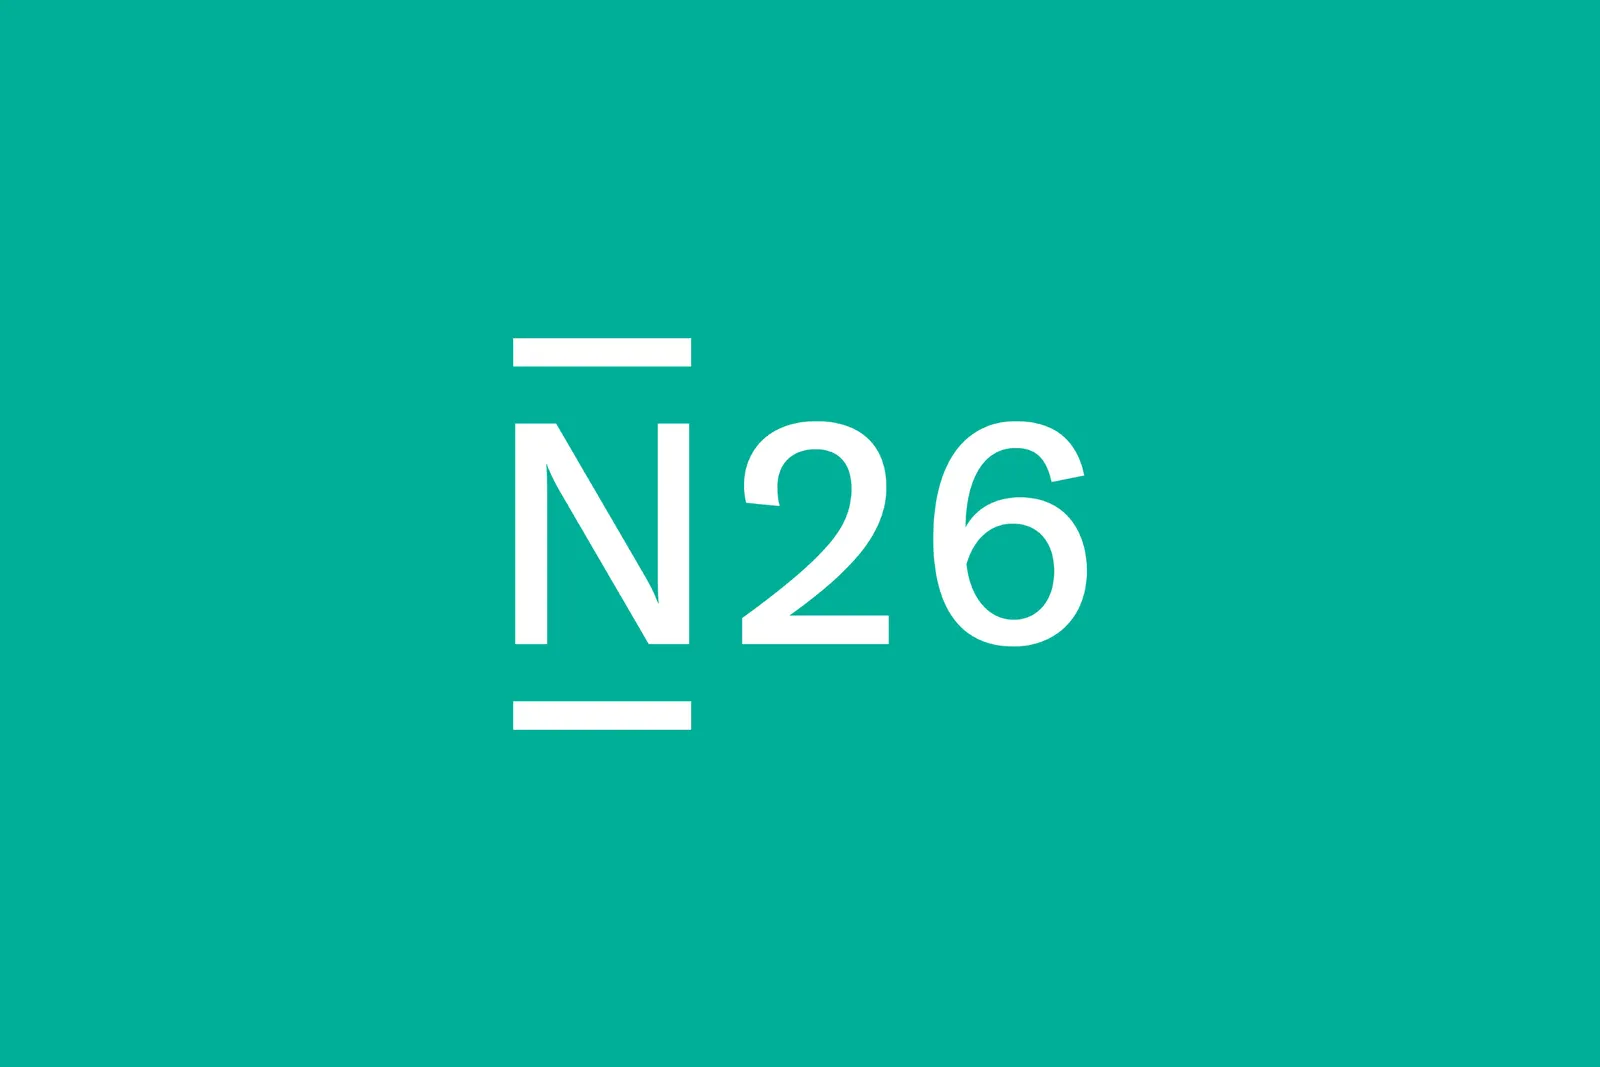 ドイツのオンラインバンク「N26」